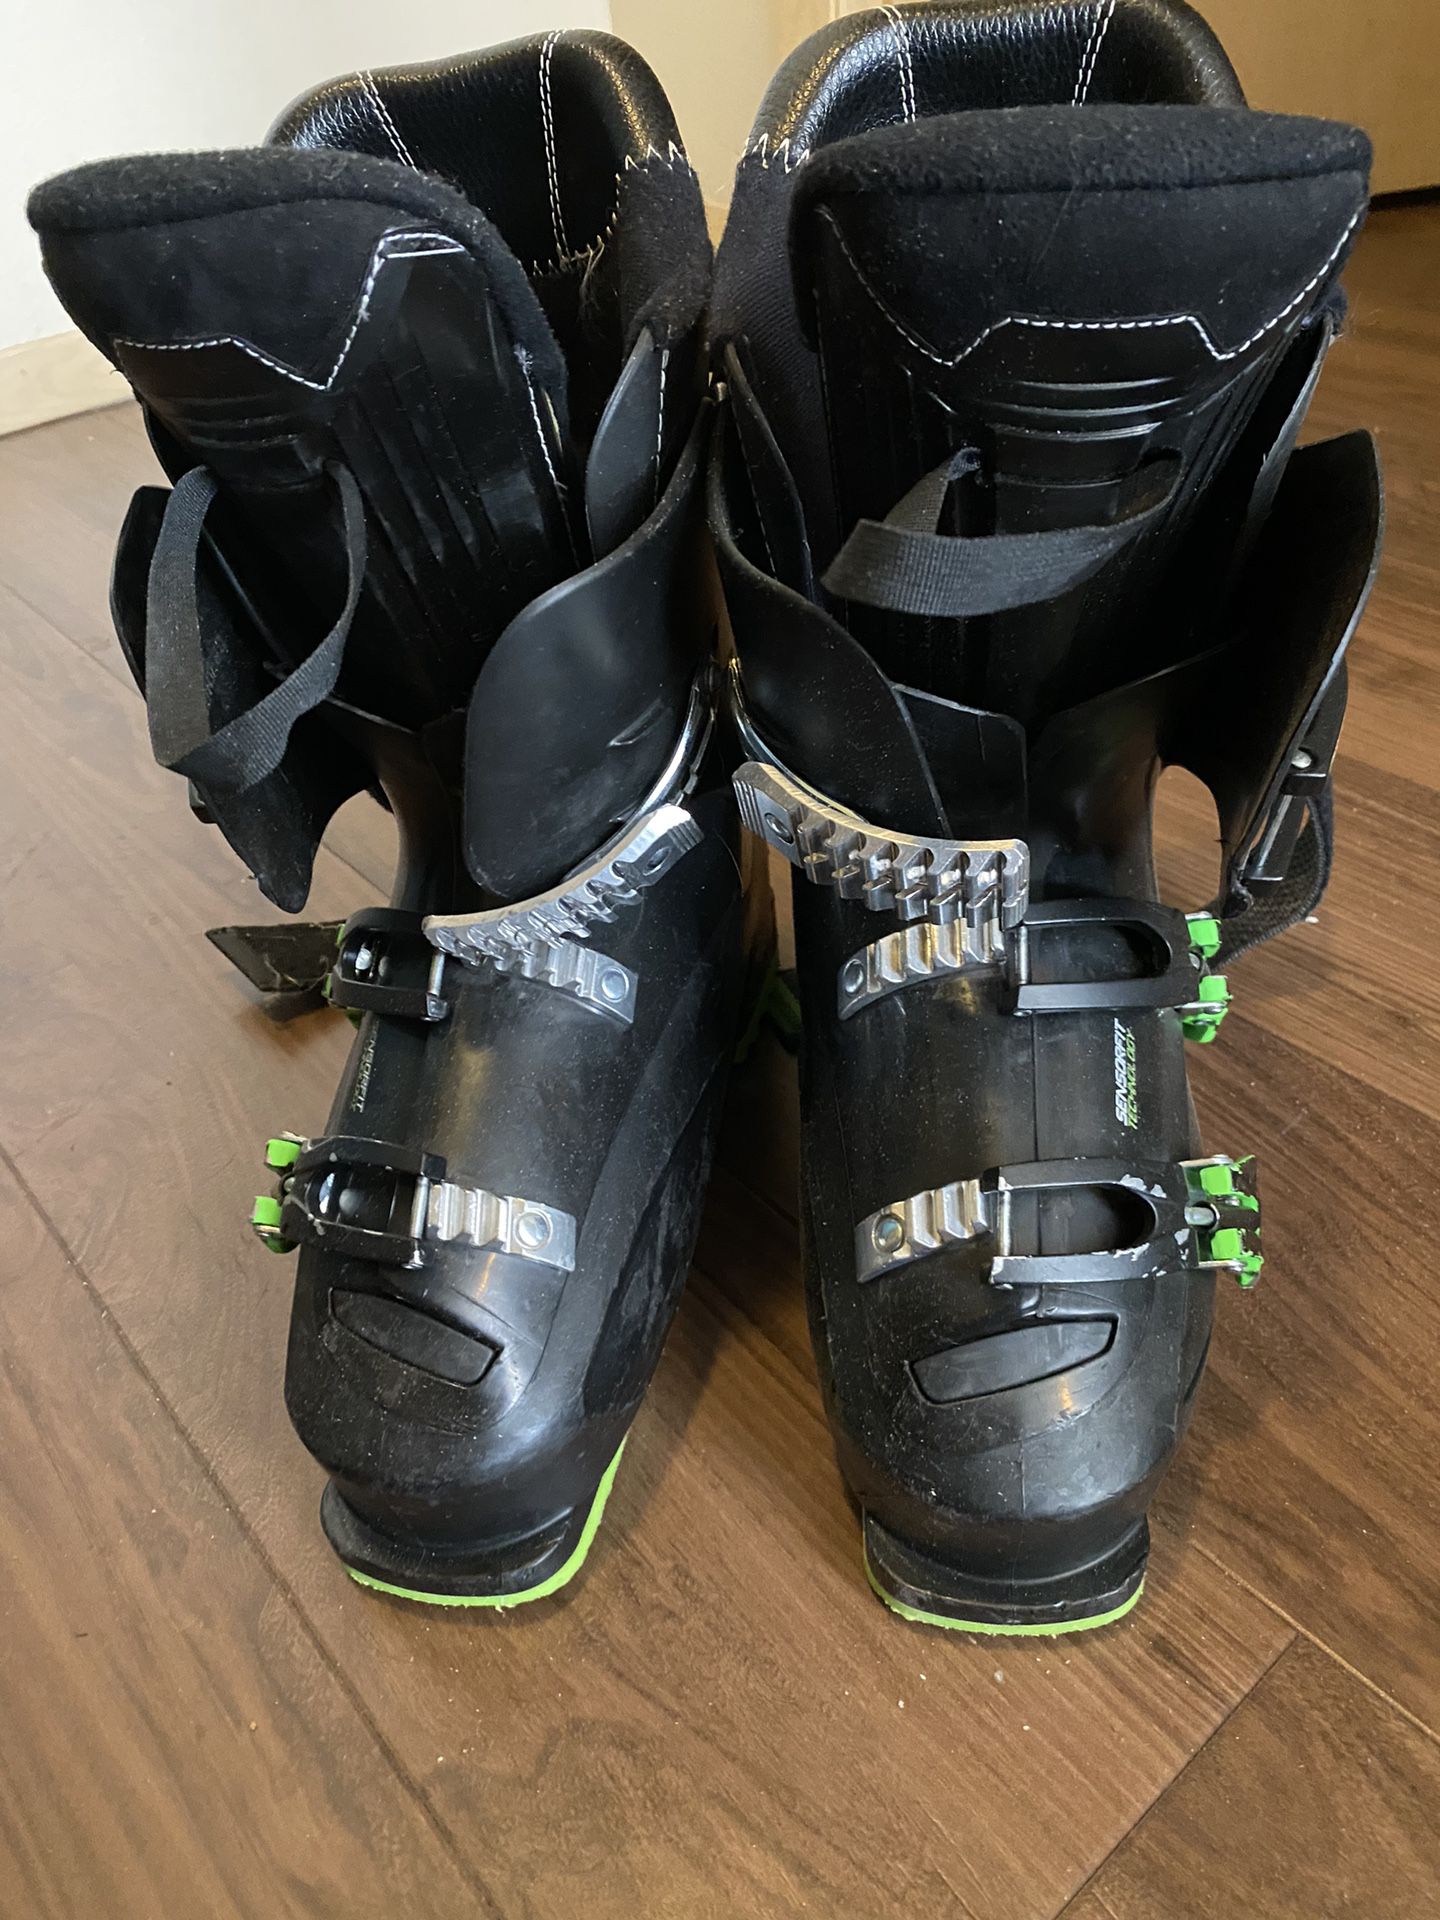 Rossignol Evo 70 25.5 ski boots